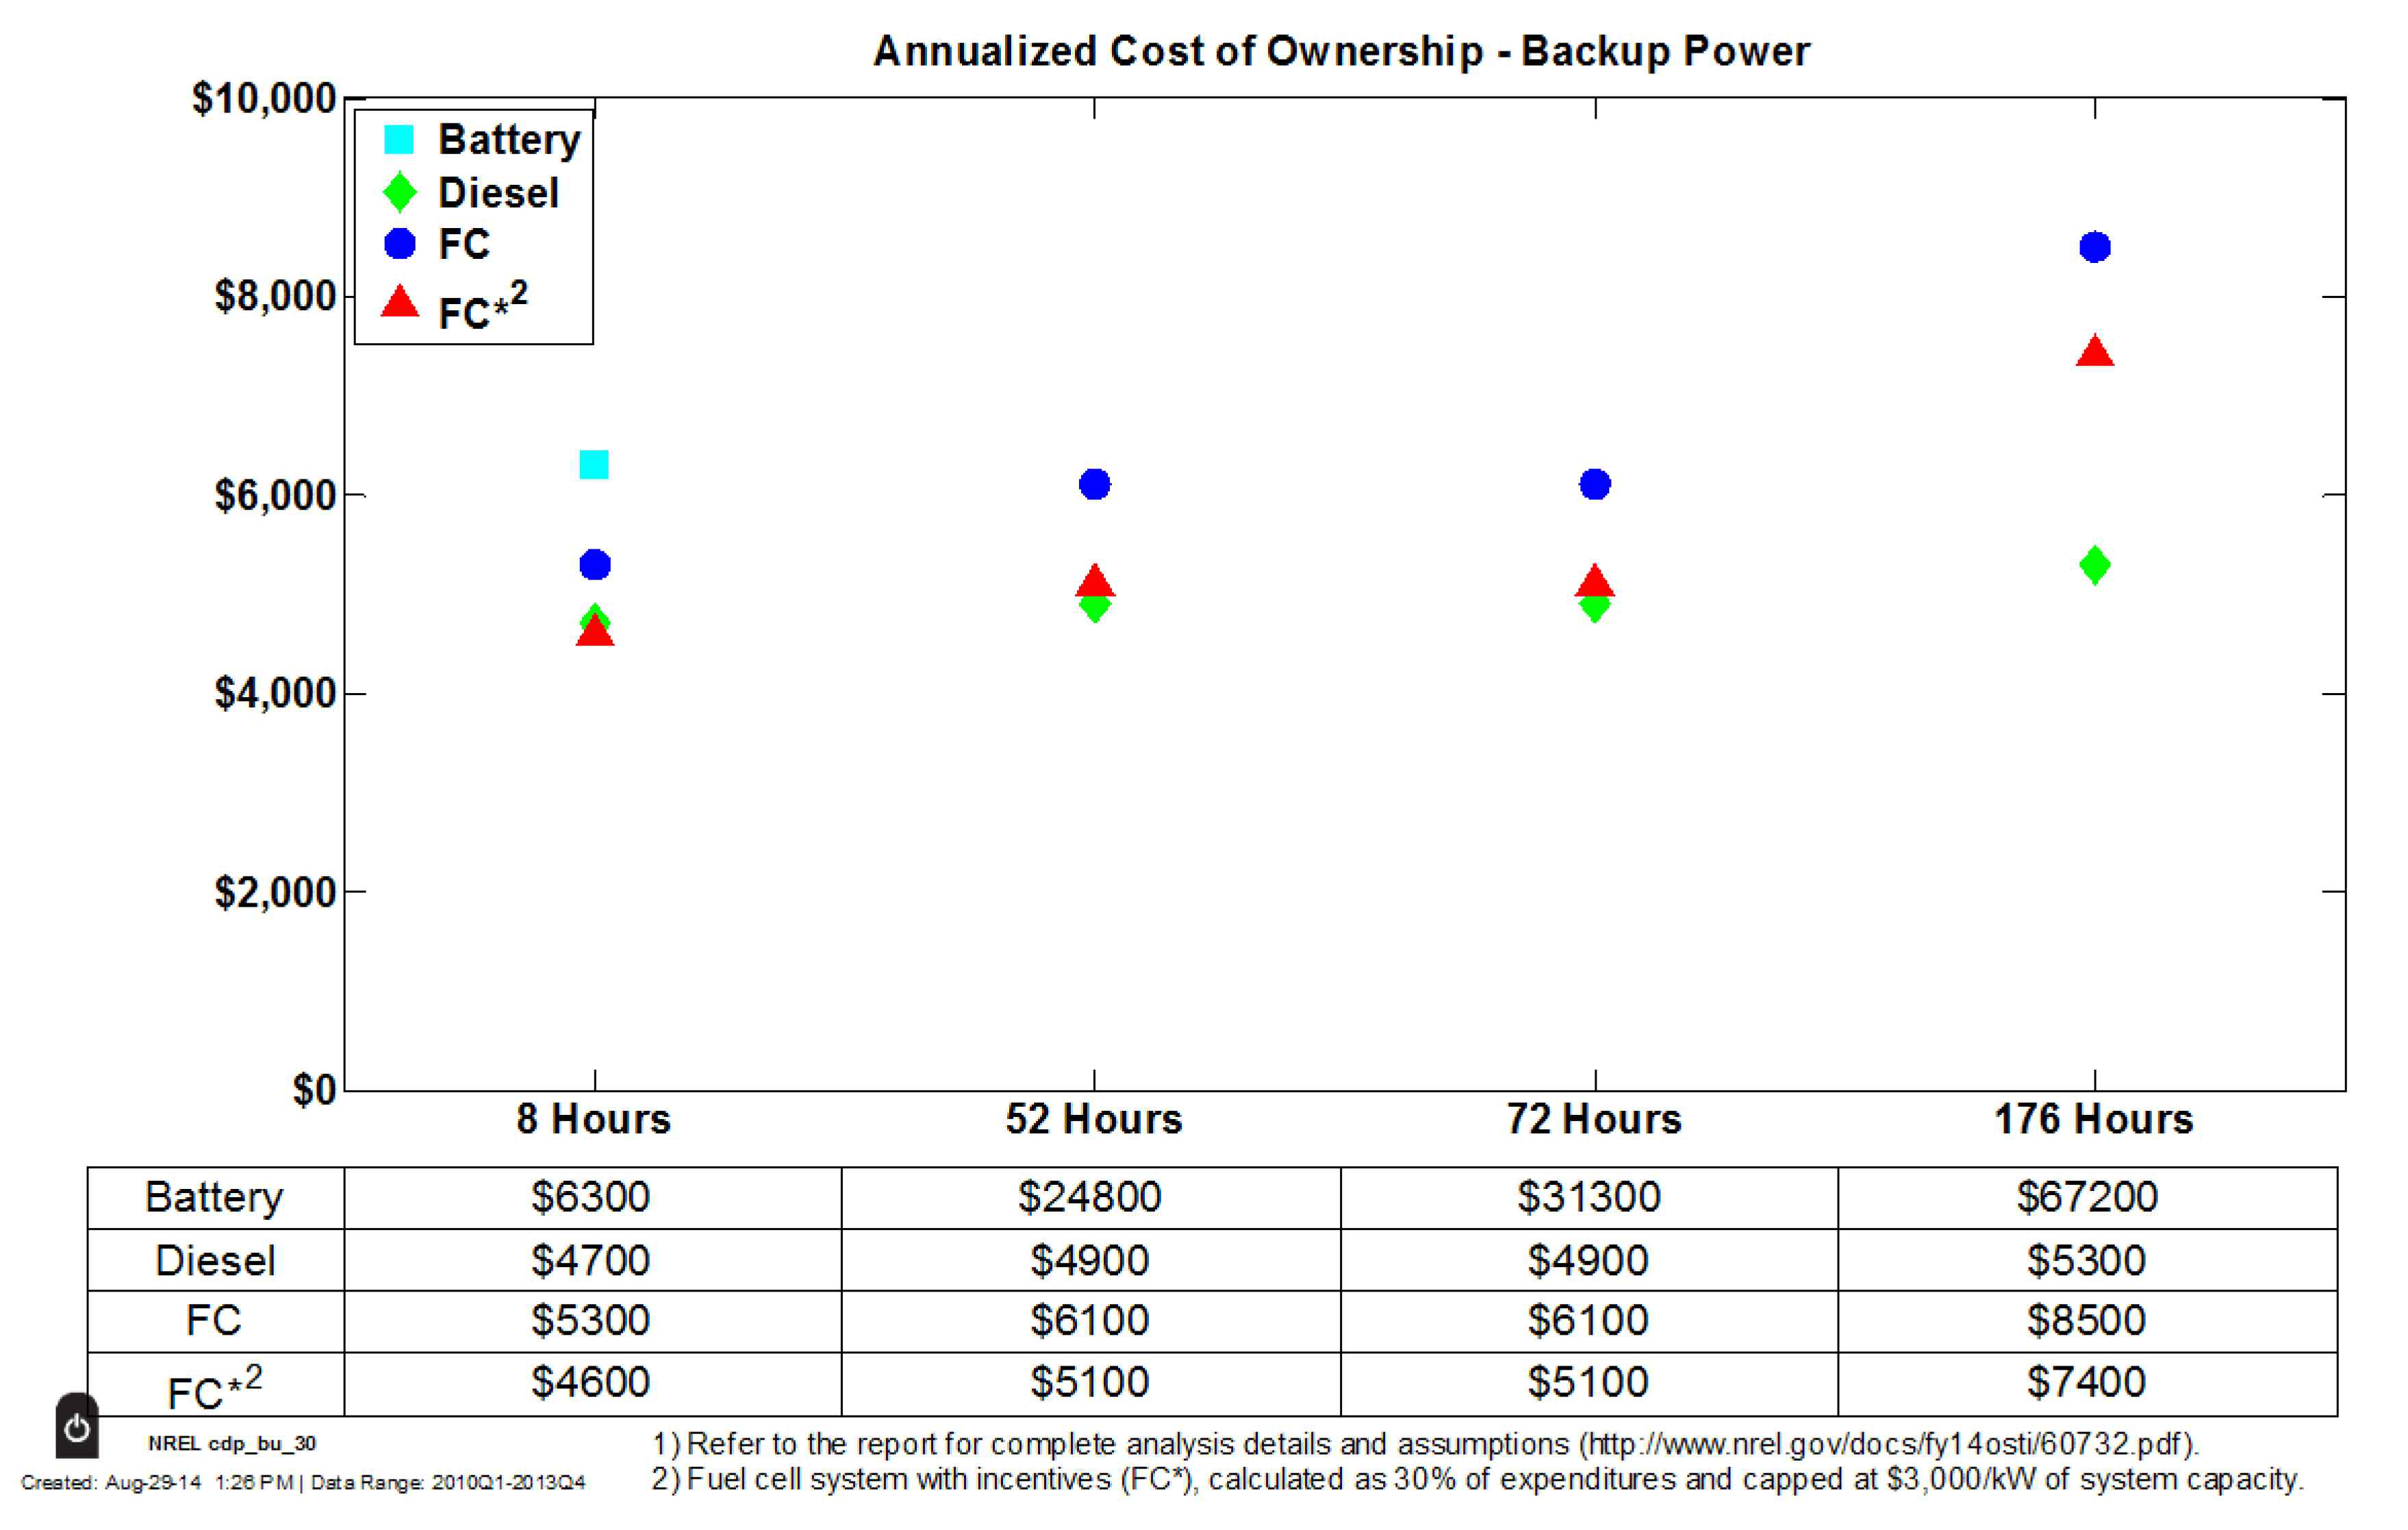 각각의 백업전력용 발전 기술의 연간 운용비용 비교